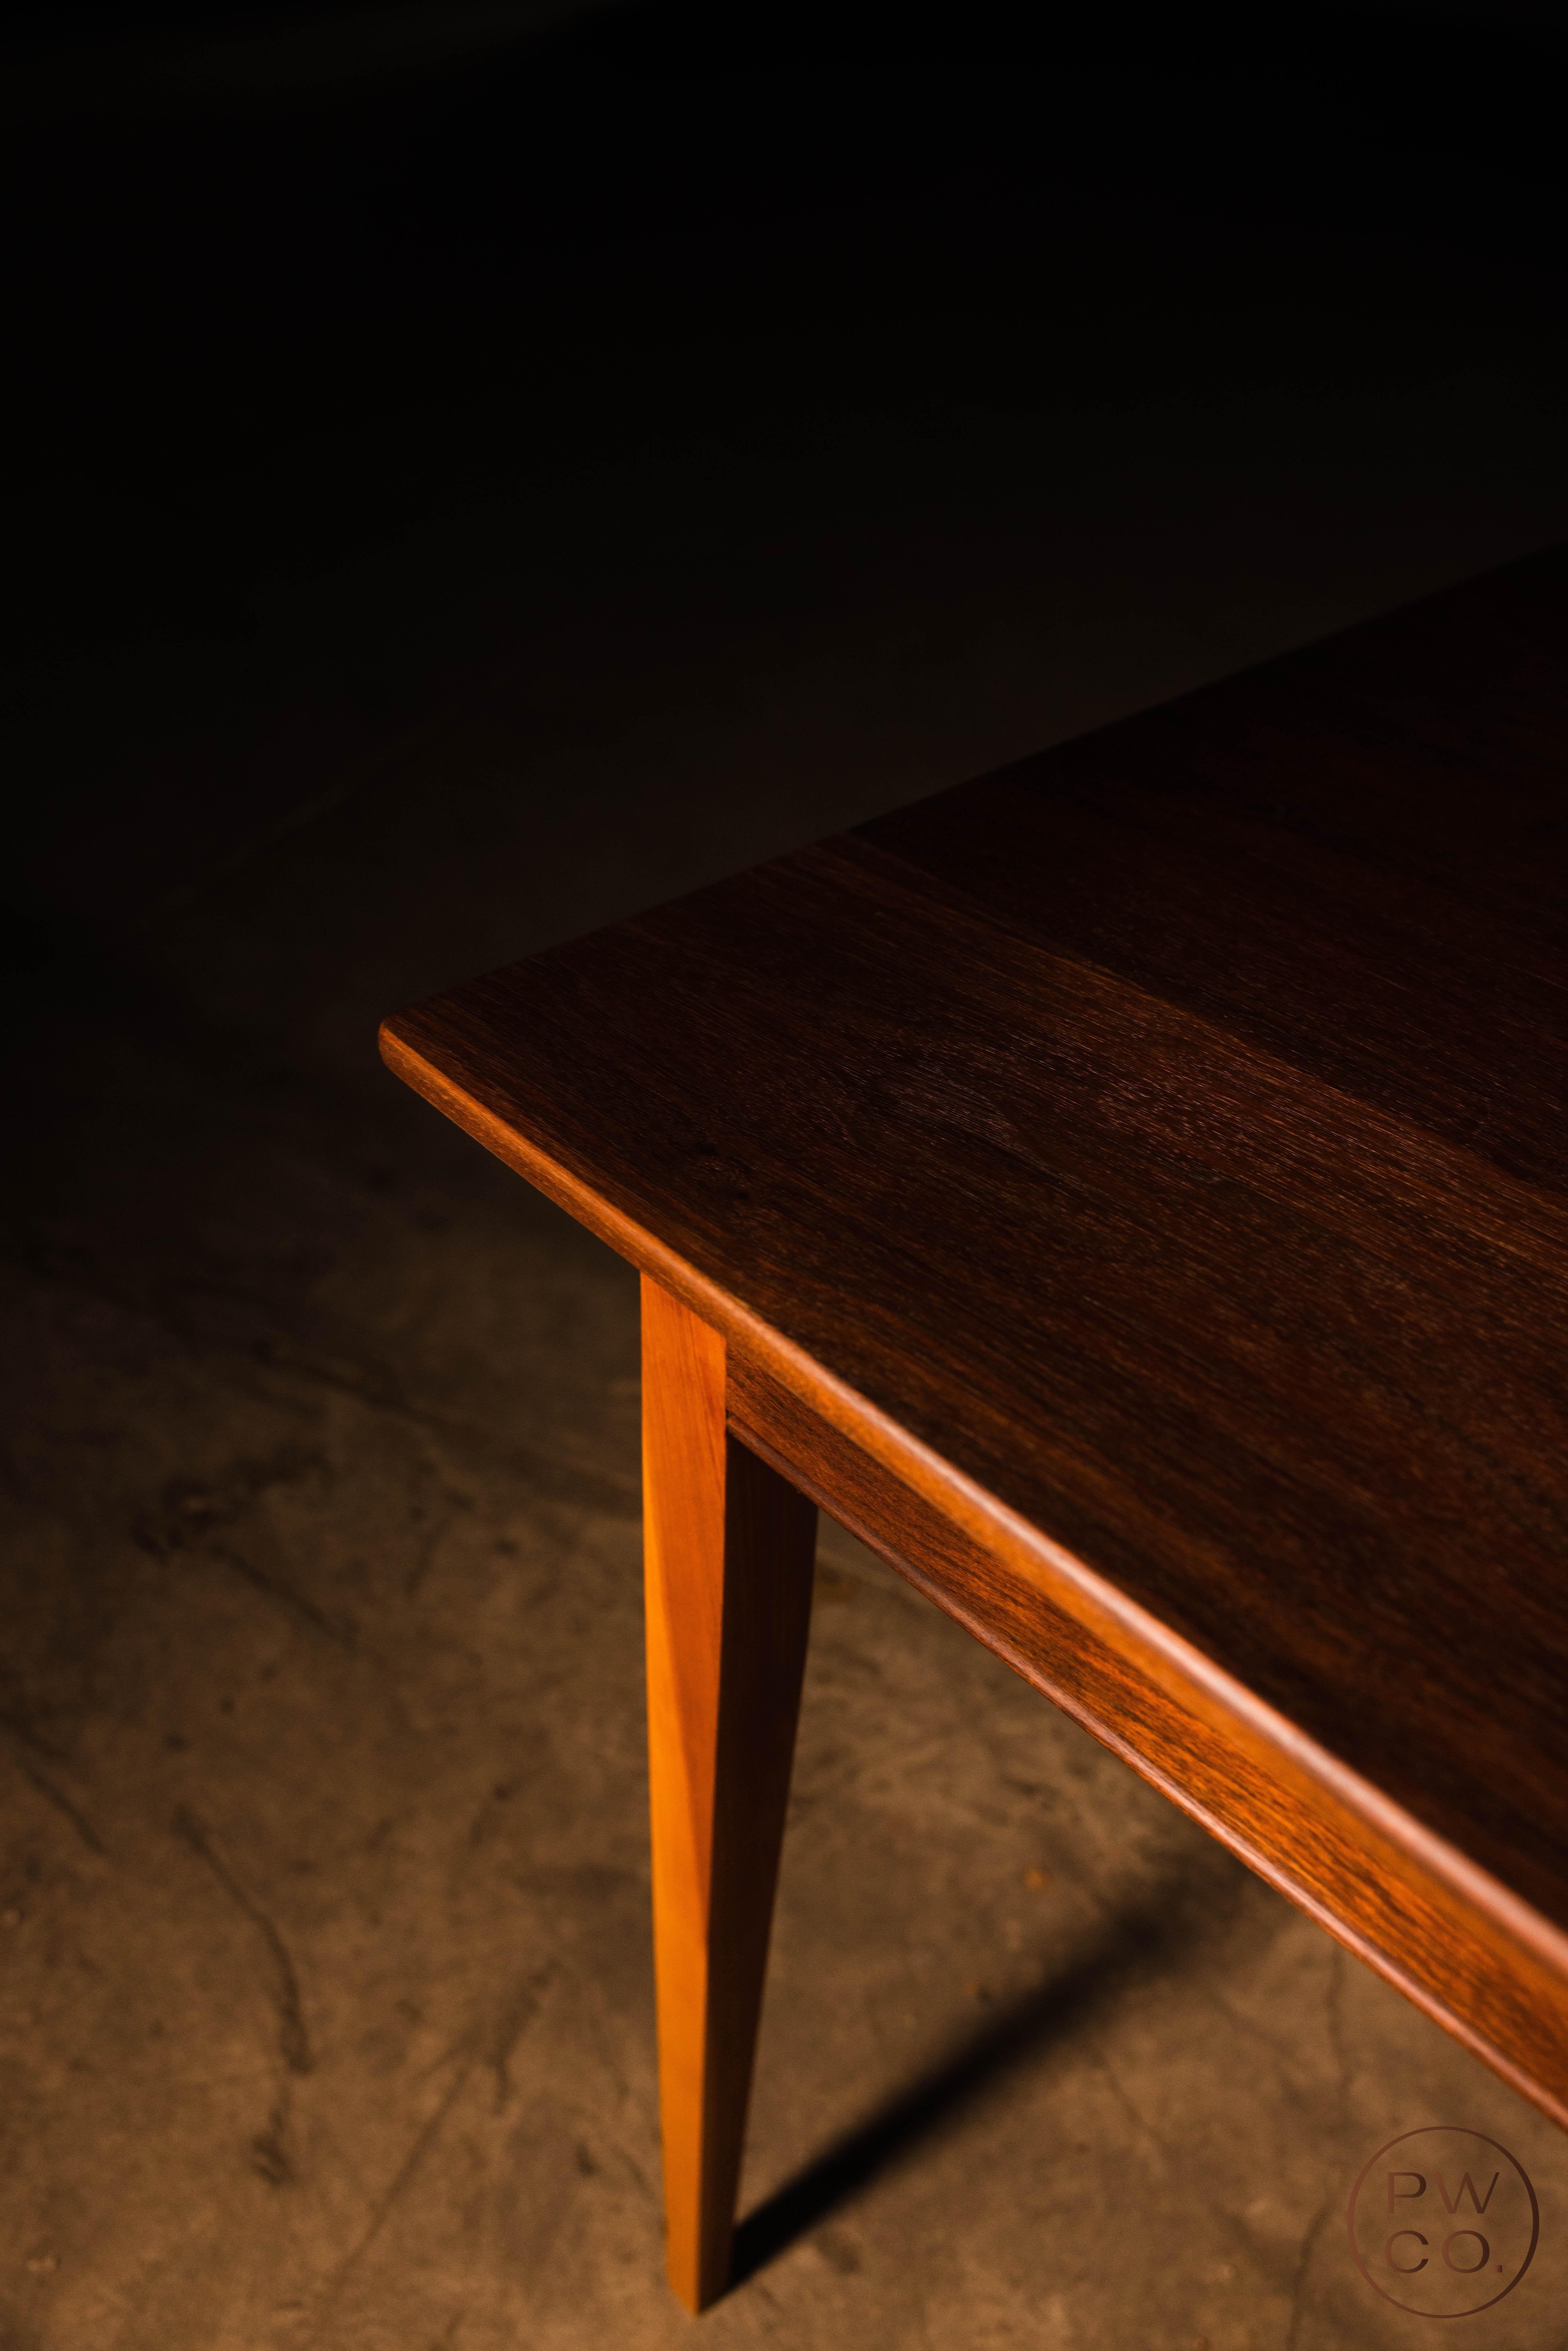 La table a été construite par le propriétaire de Paramount Woodworking il y a 14 ans et a récemment été entièrement restaurée pour être plus belle que jamais. Il est disponible à un prix fantastique !

Dimensions : 31